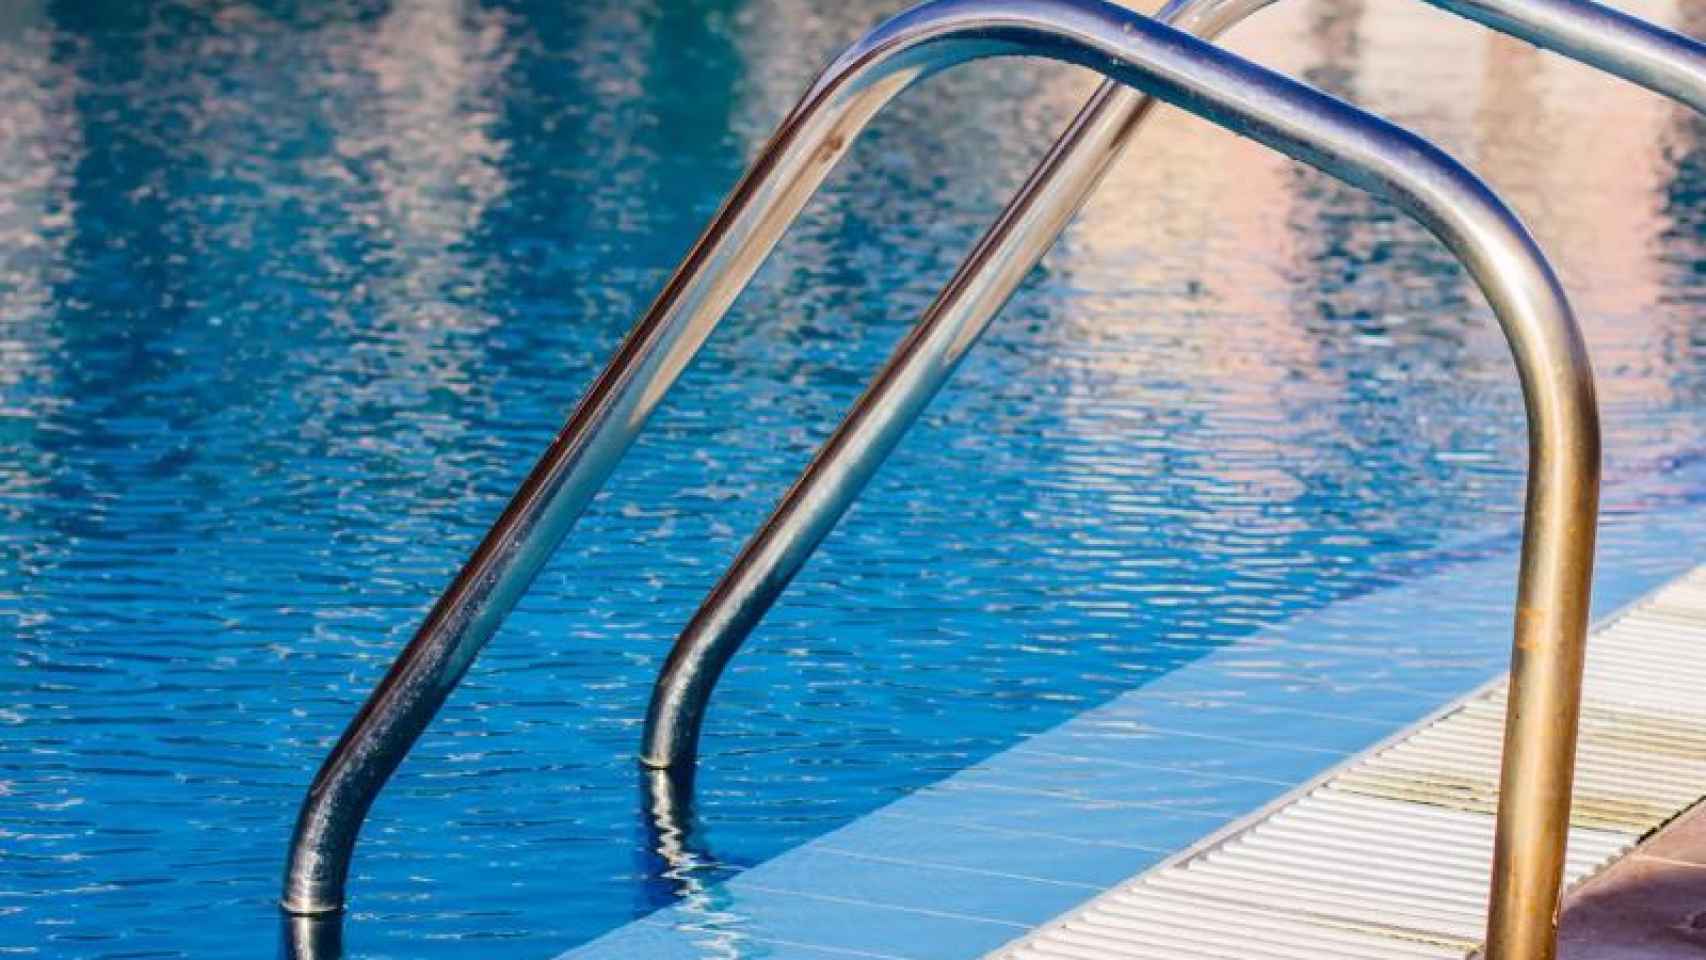 Permanece grave la mujer que sufrió una ahogamiento en la piscina de Azuqueca